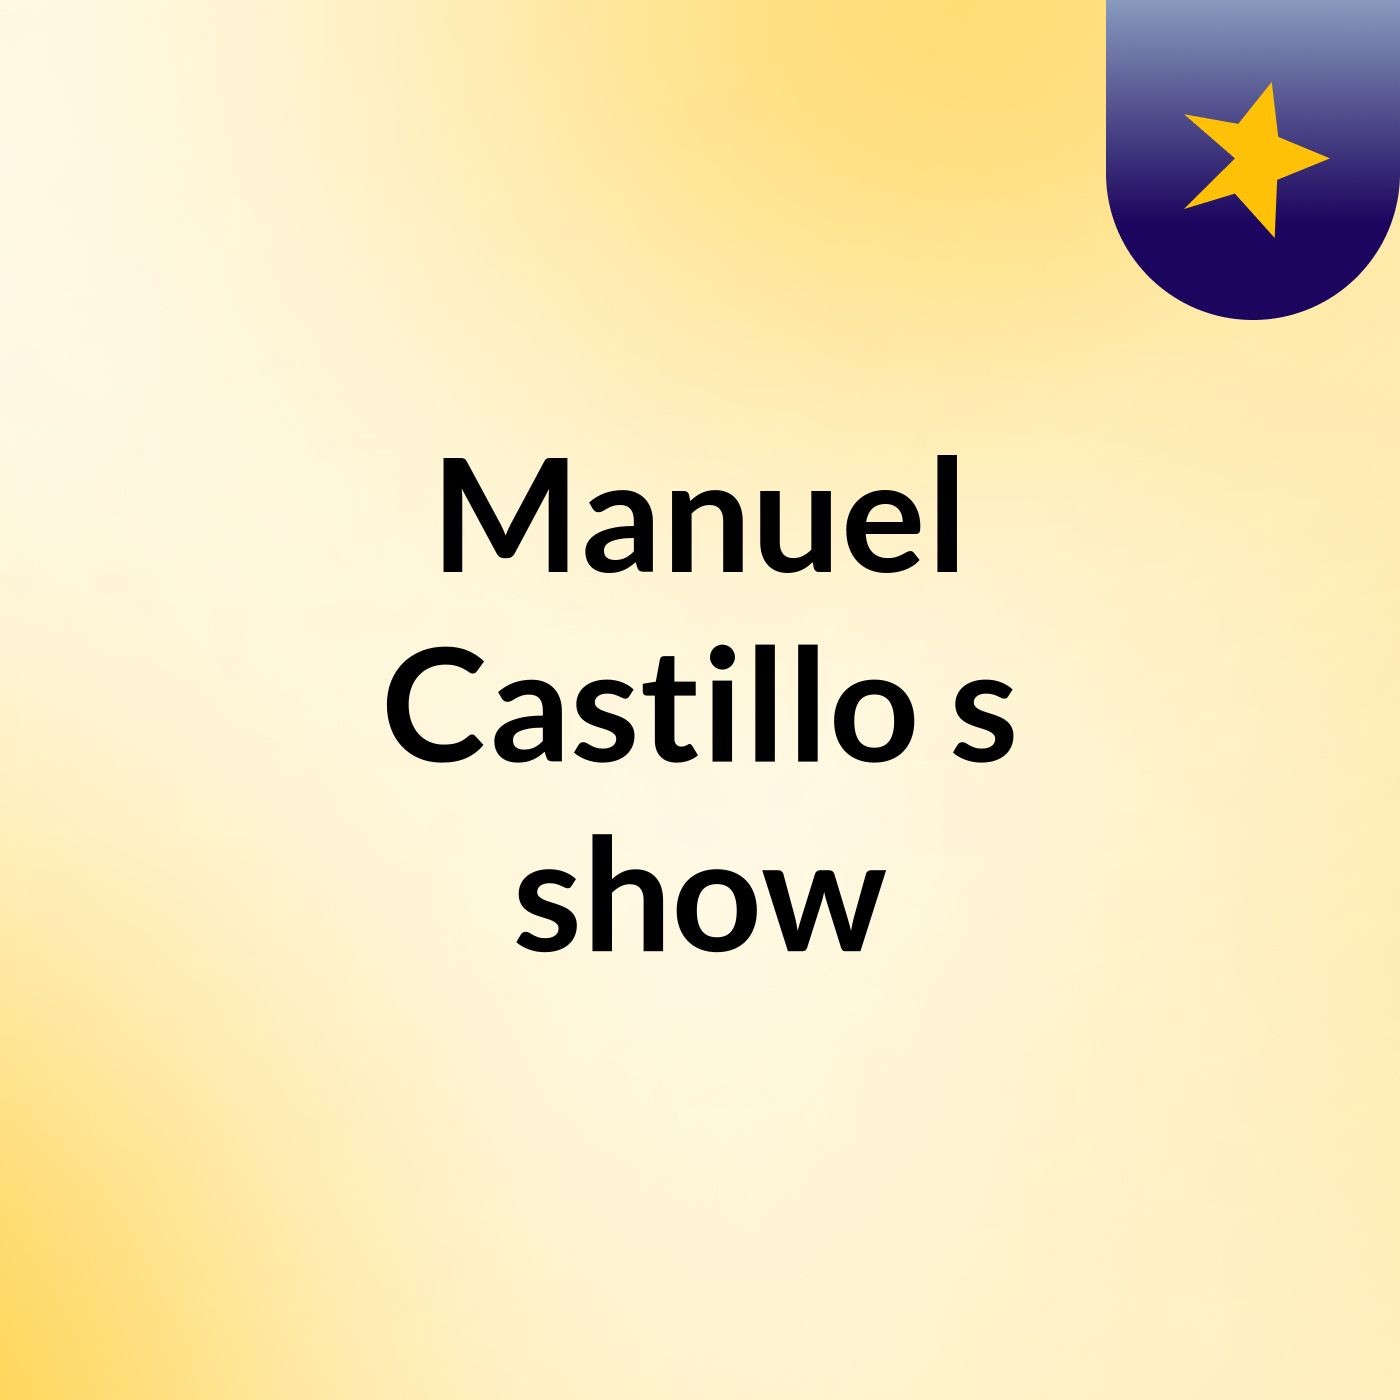 Manuel Castillo's show